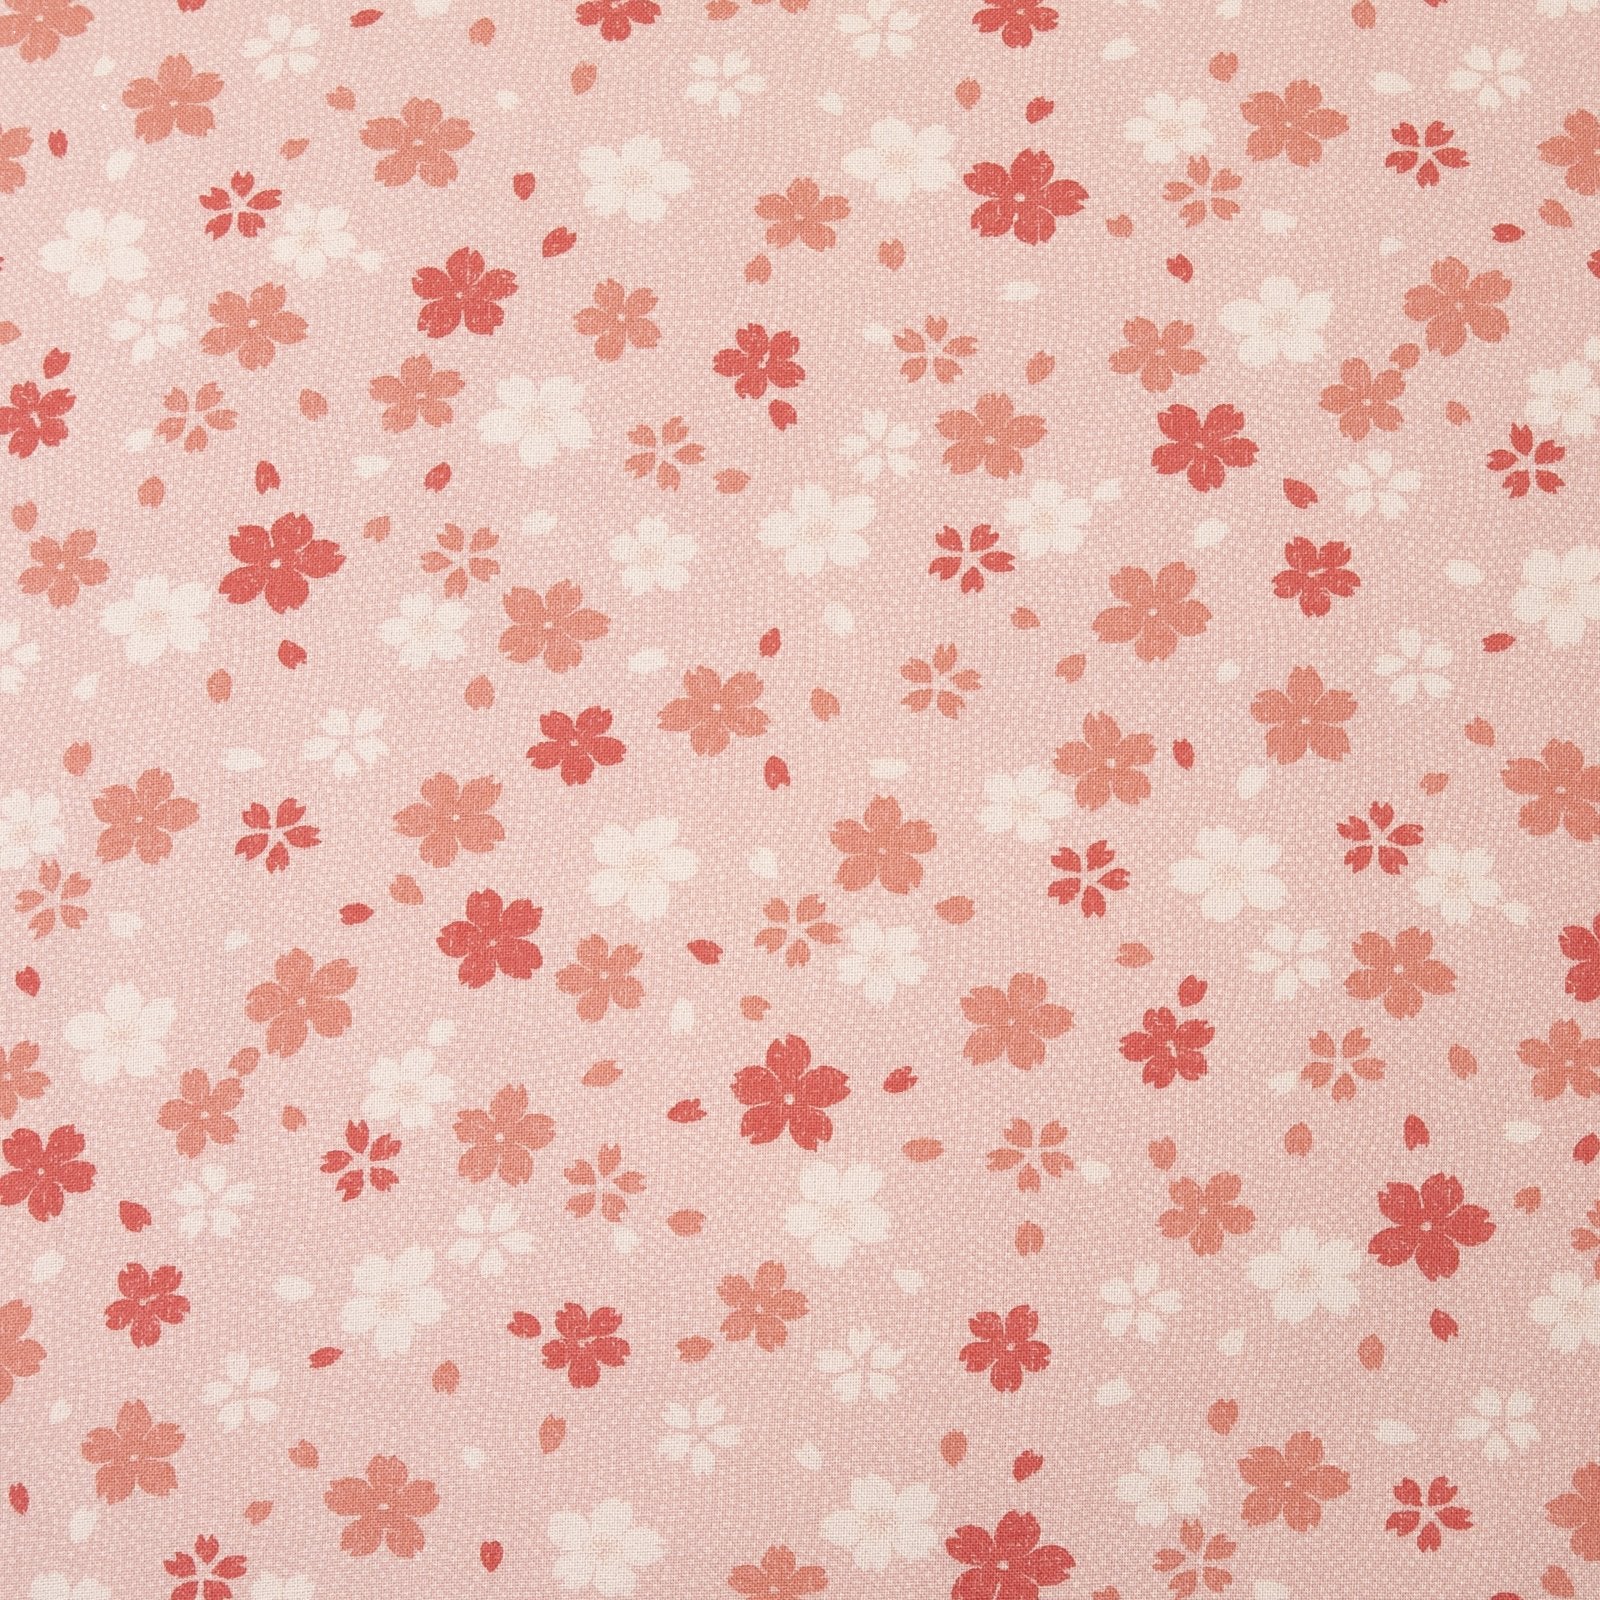 Cherry Blossom Pink Throw Pillow_Pillows & Shams_Throw Pillows